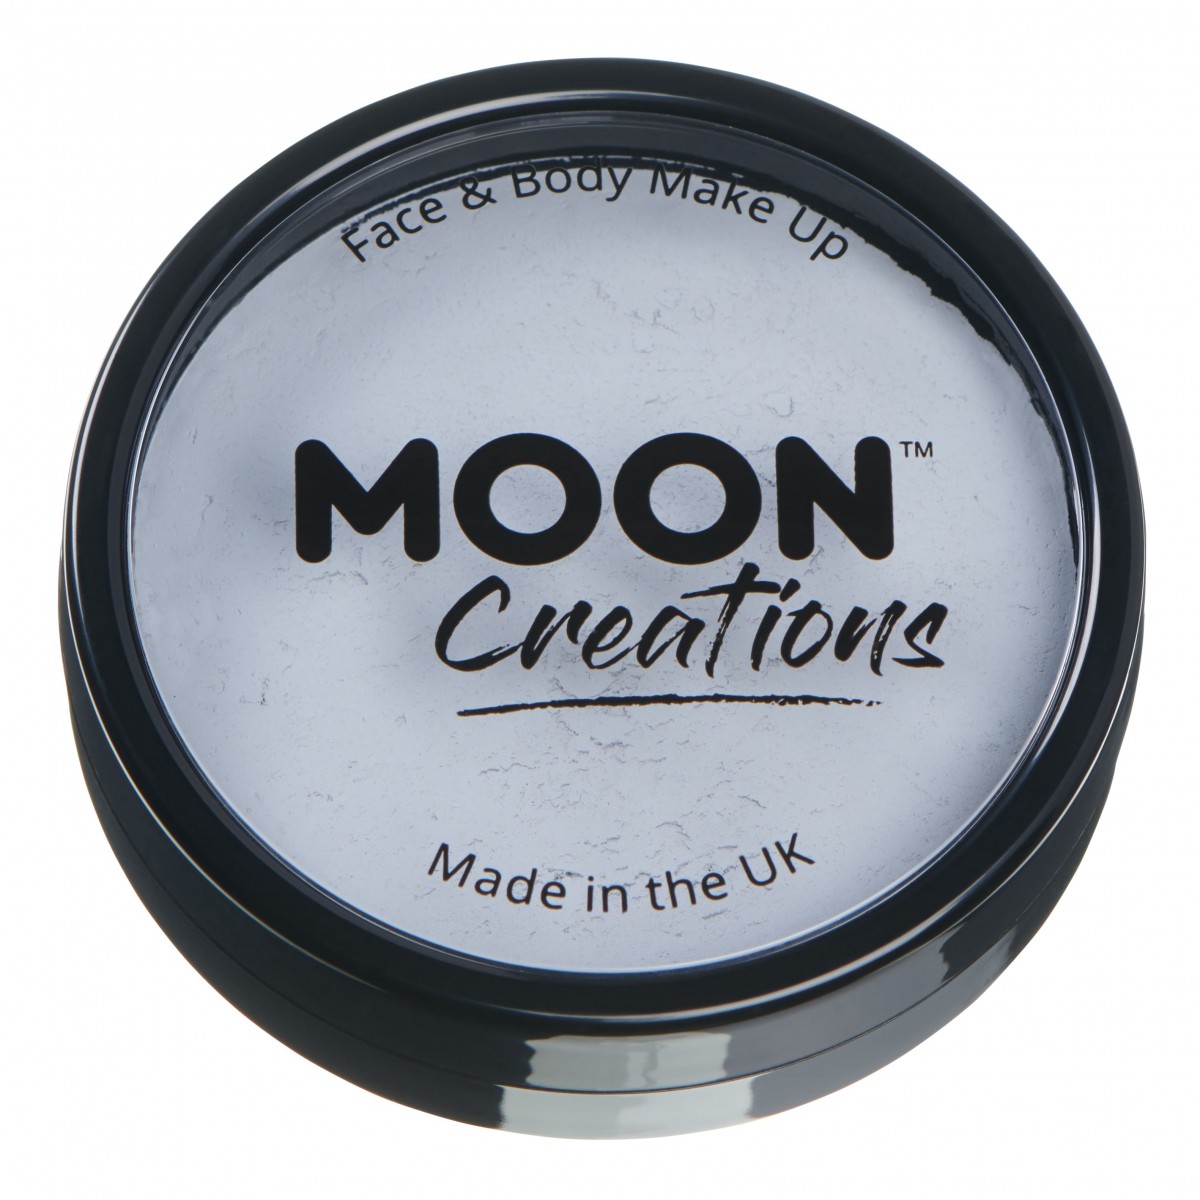 MOON CREATIONS C1 FACE & BODY CAKE MAKEUP LIGHT GREY 36g